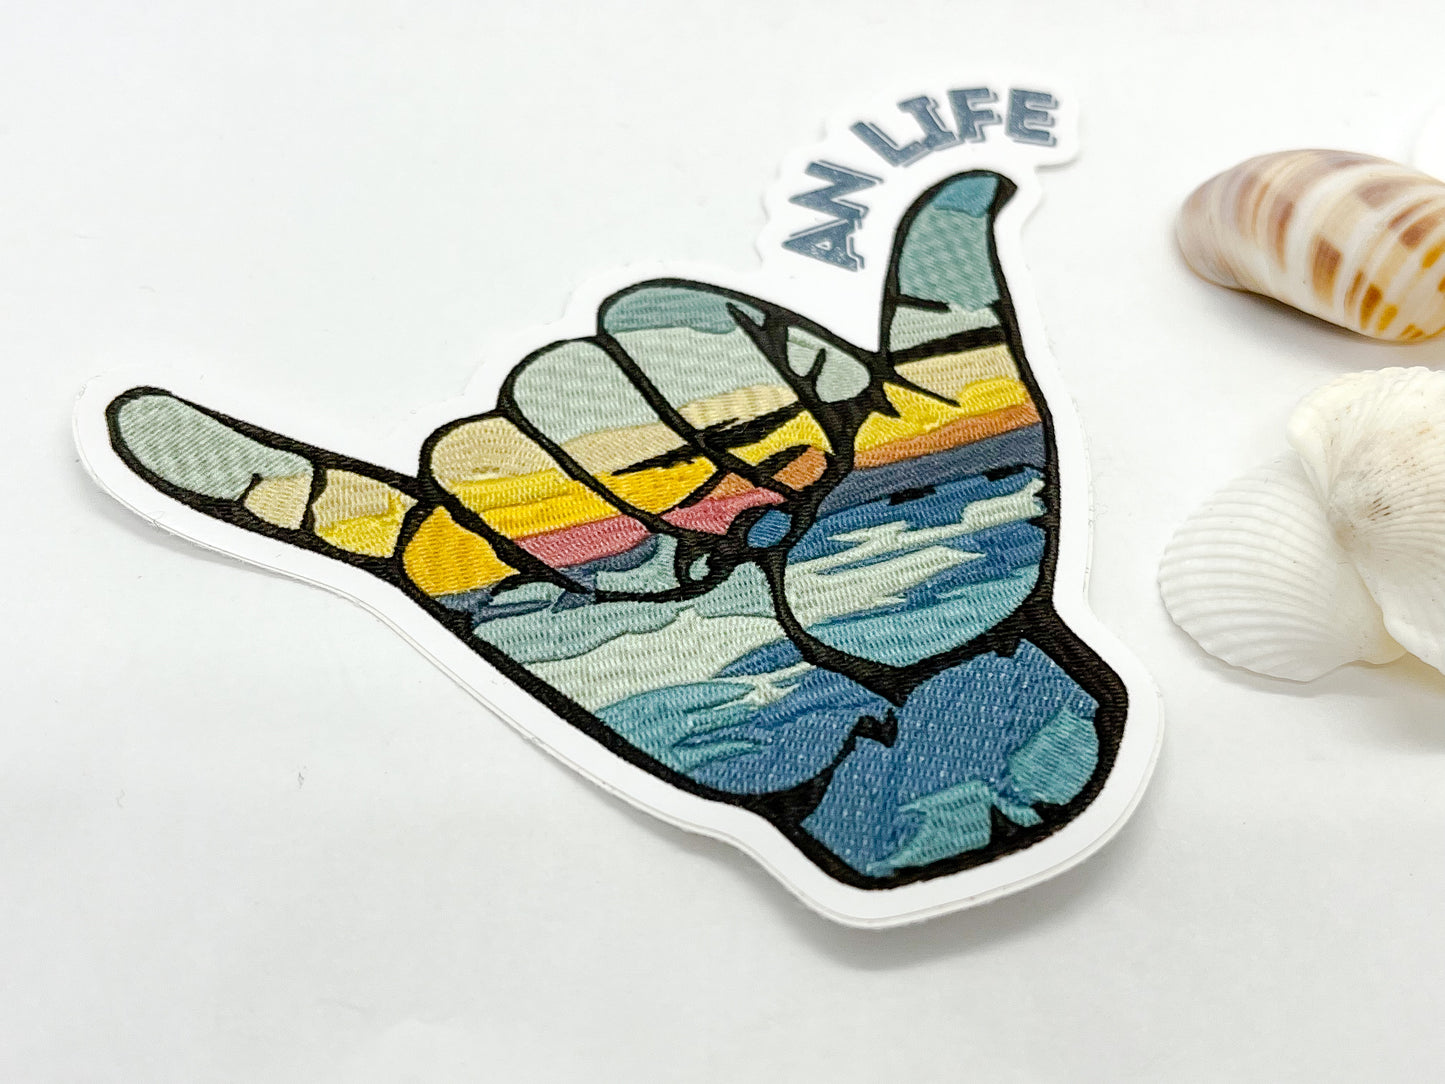 'VAN LIFE' Sticker